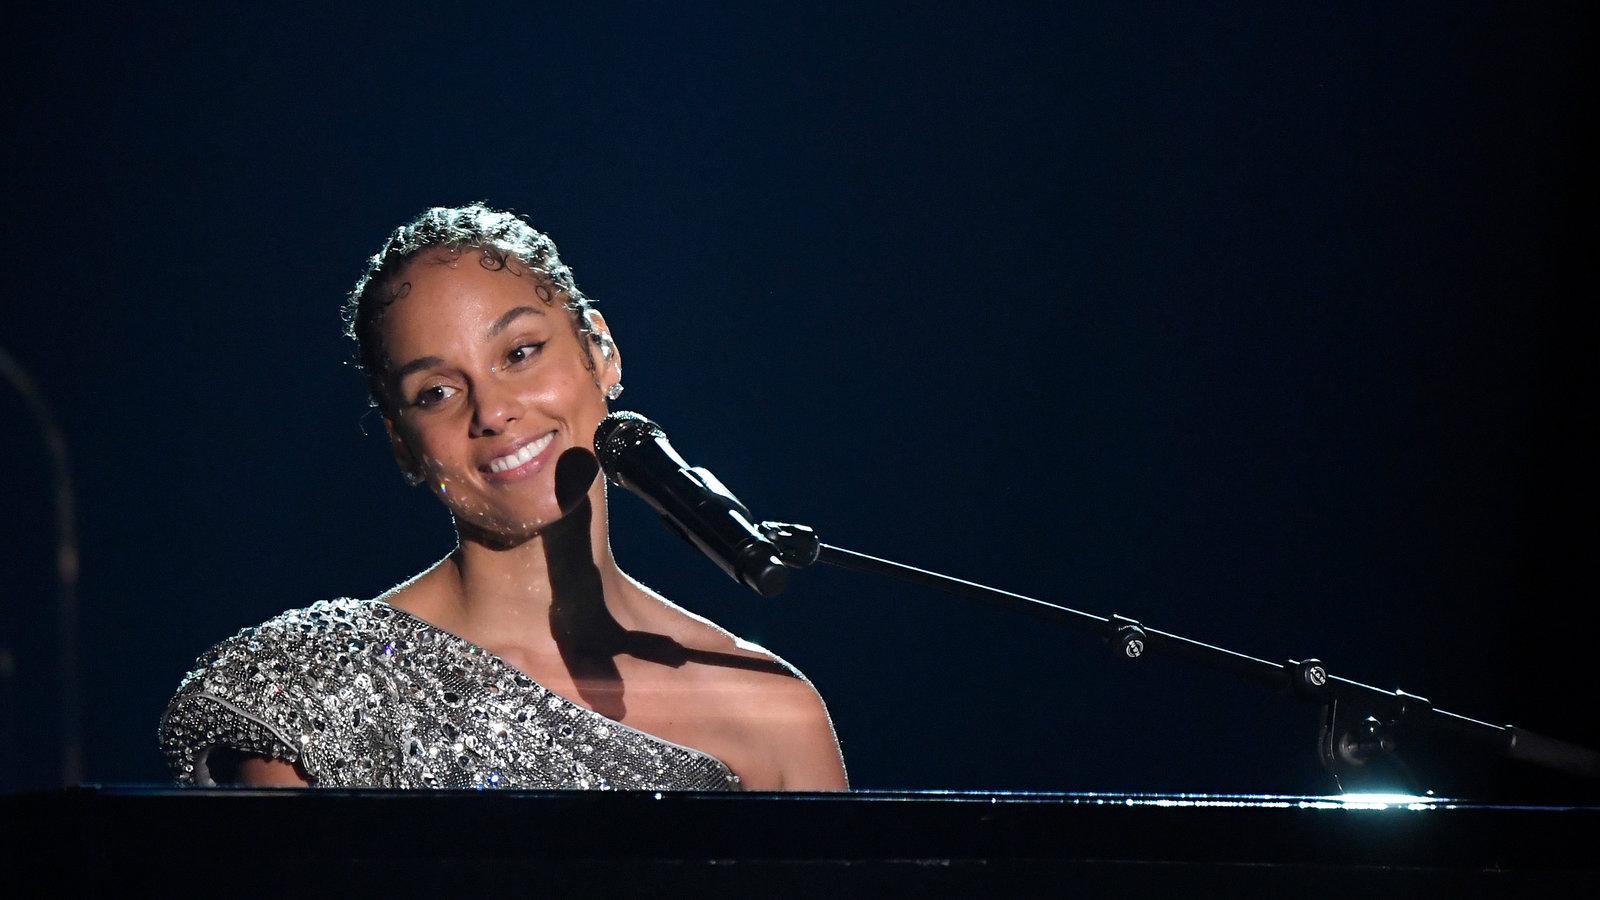 Alicia Keys Seems to Reference Grammys Turmoil in Speech